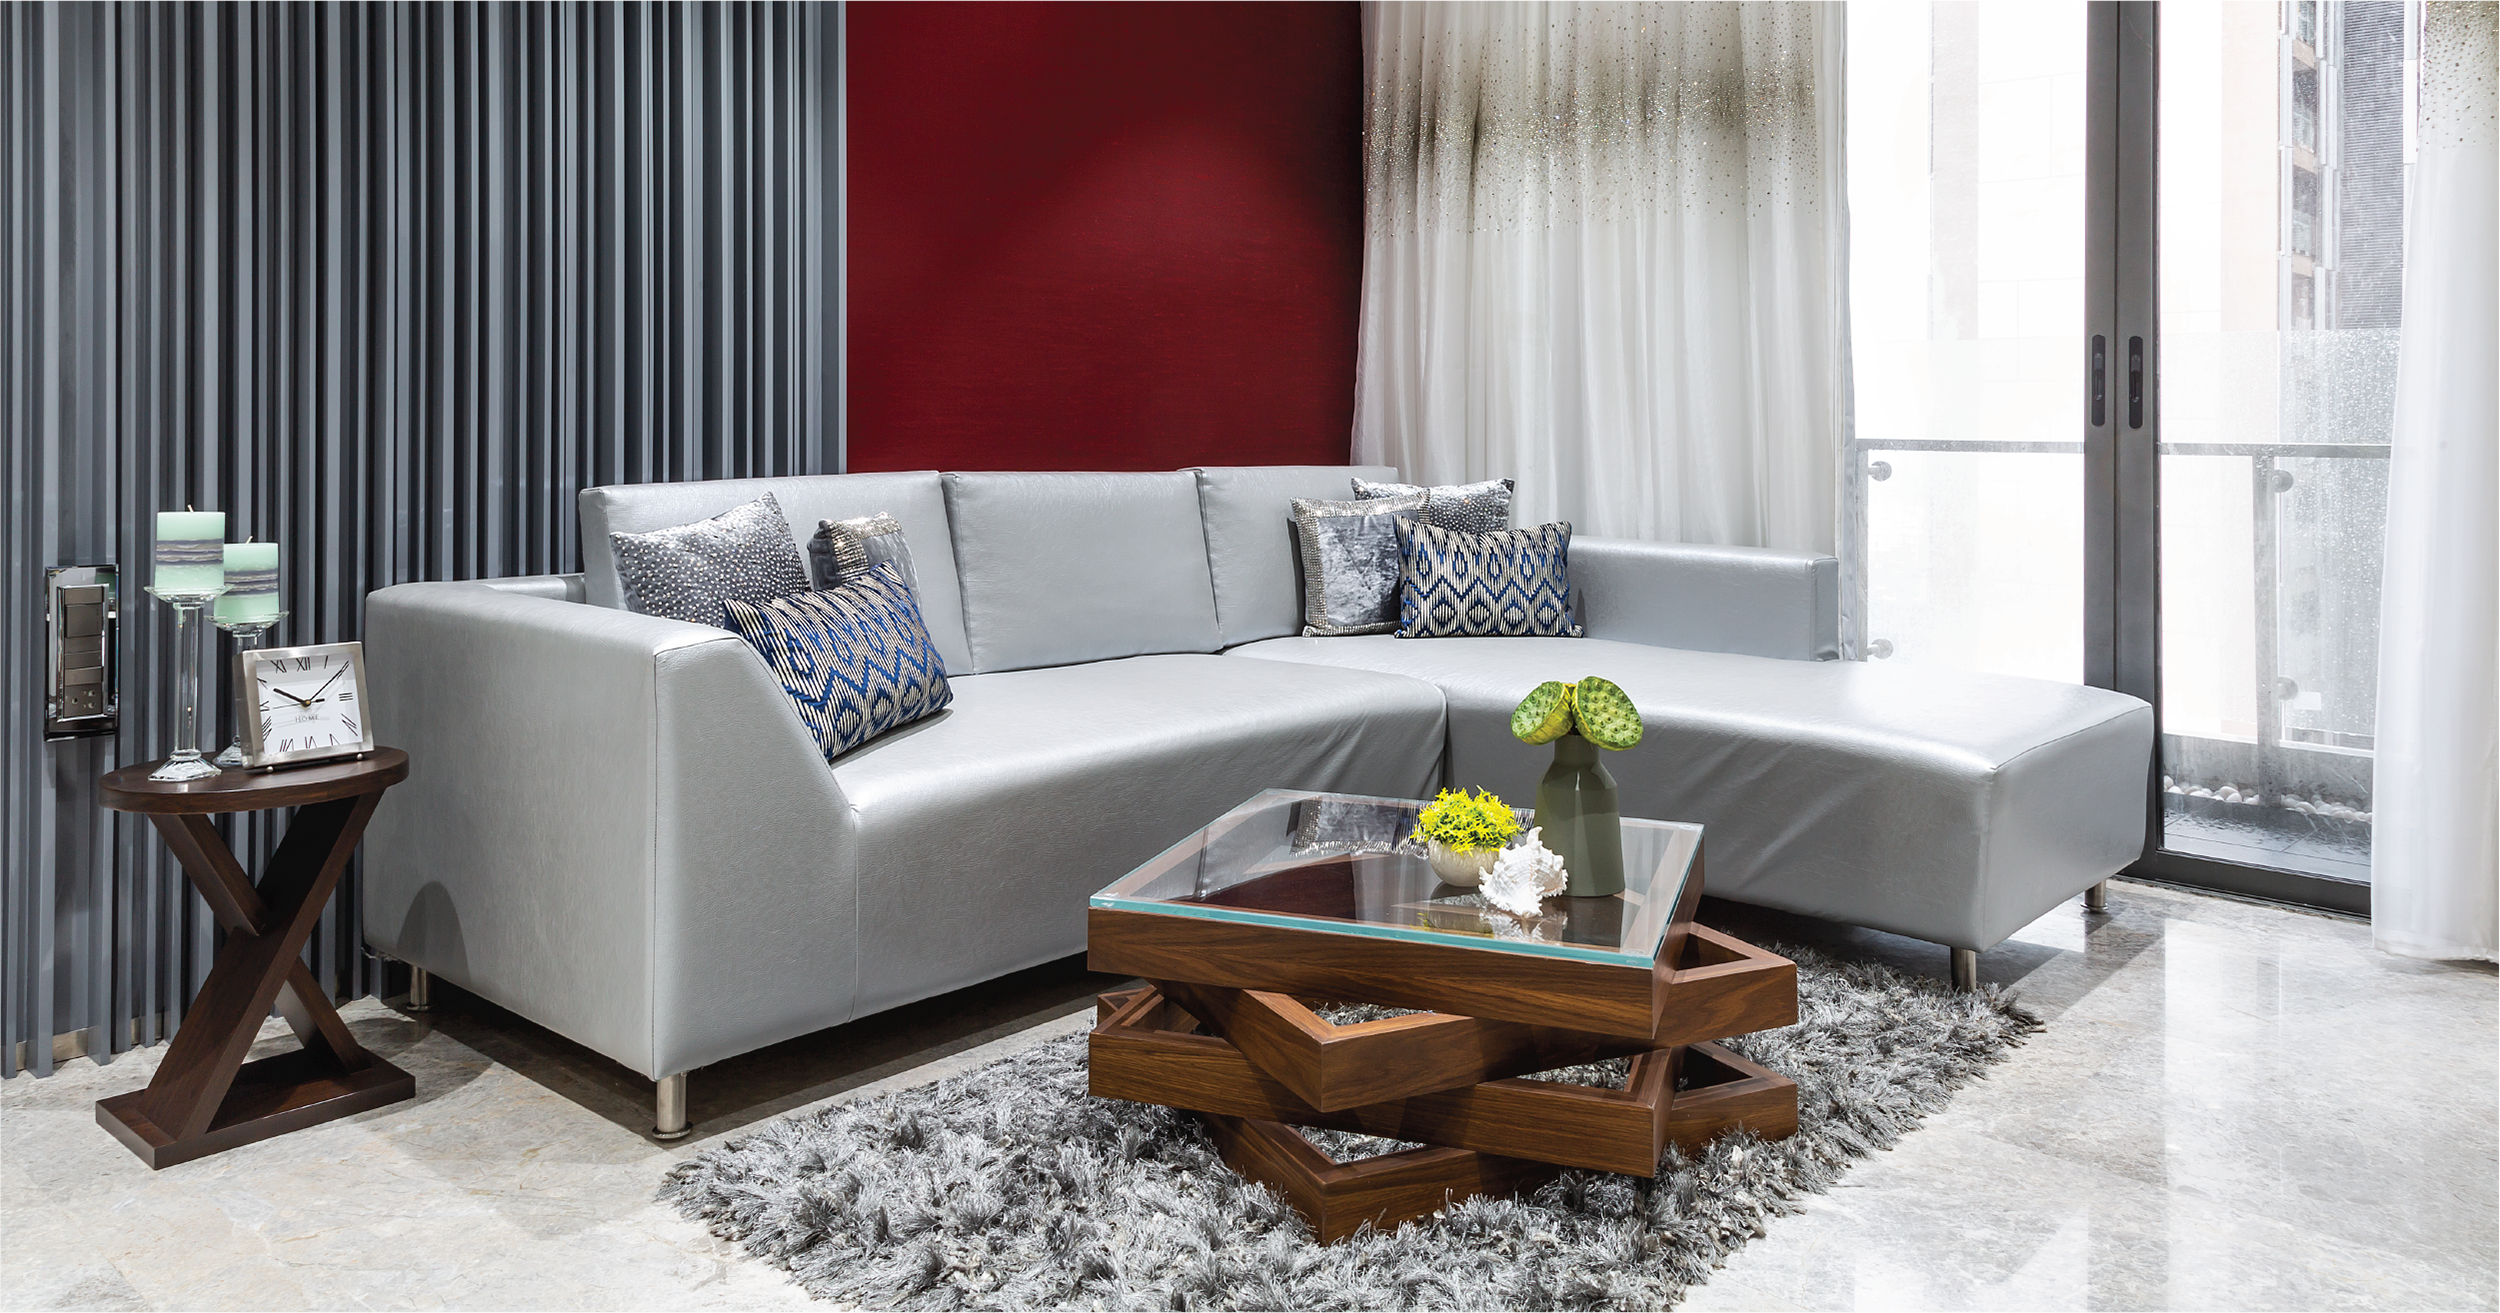 How Custom Furniture Transformed This Compact Mumbai Home